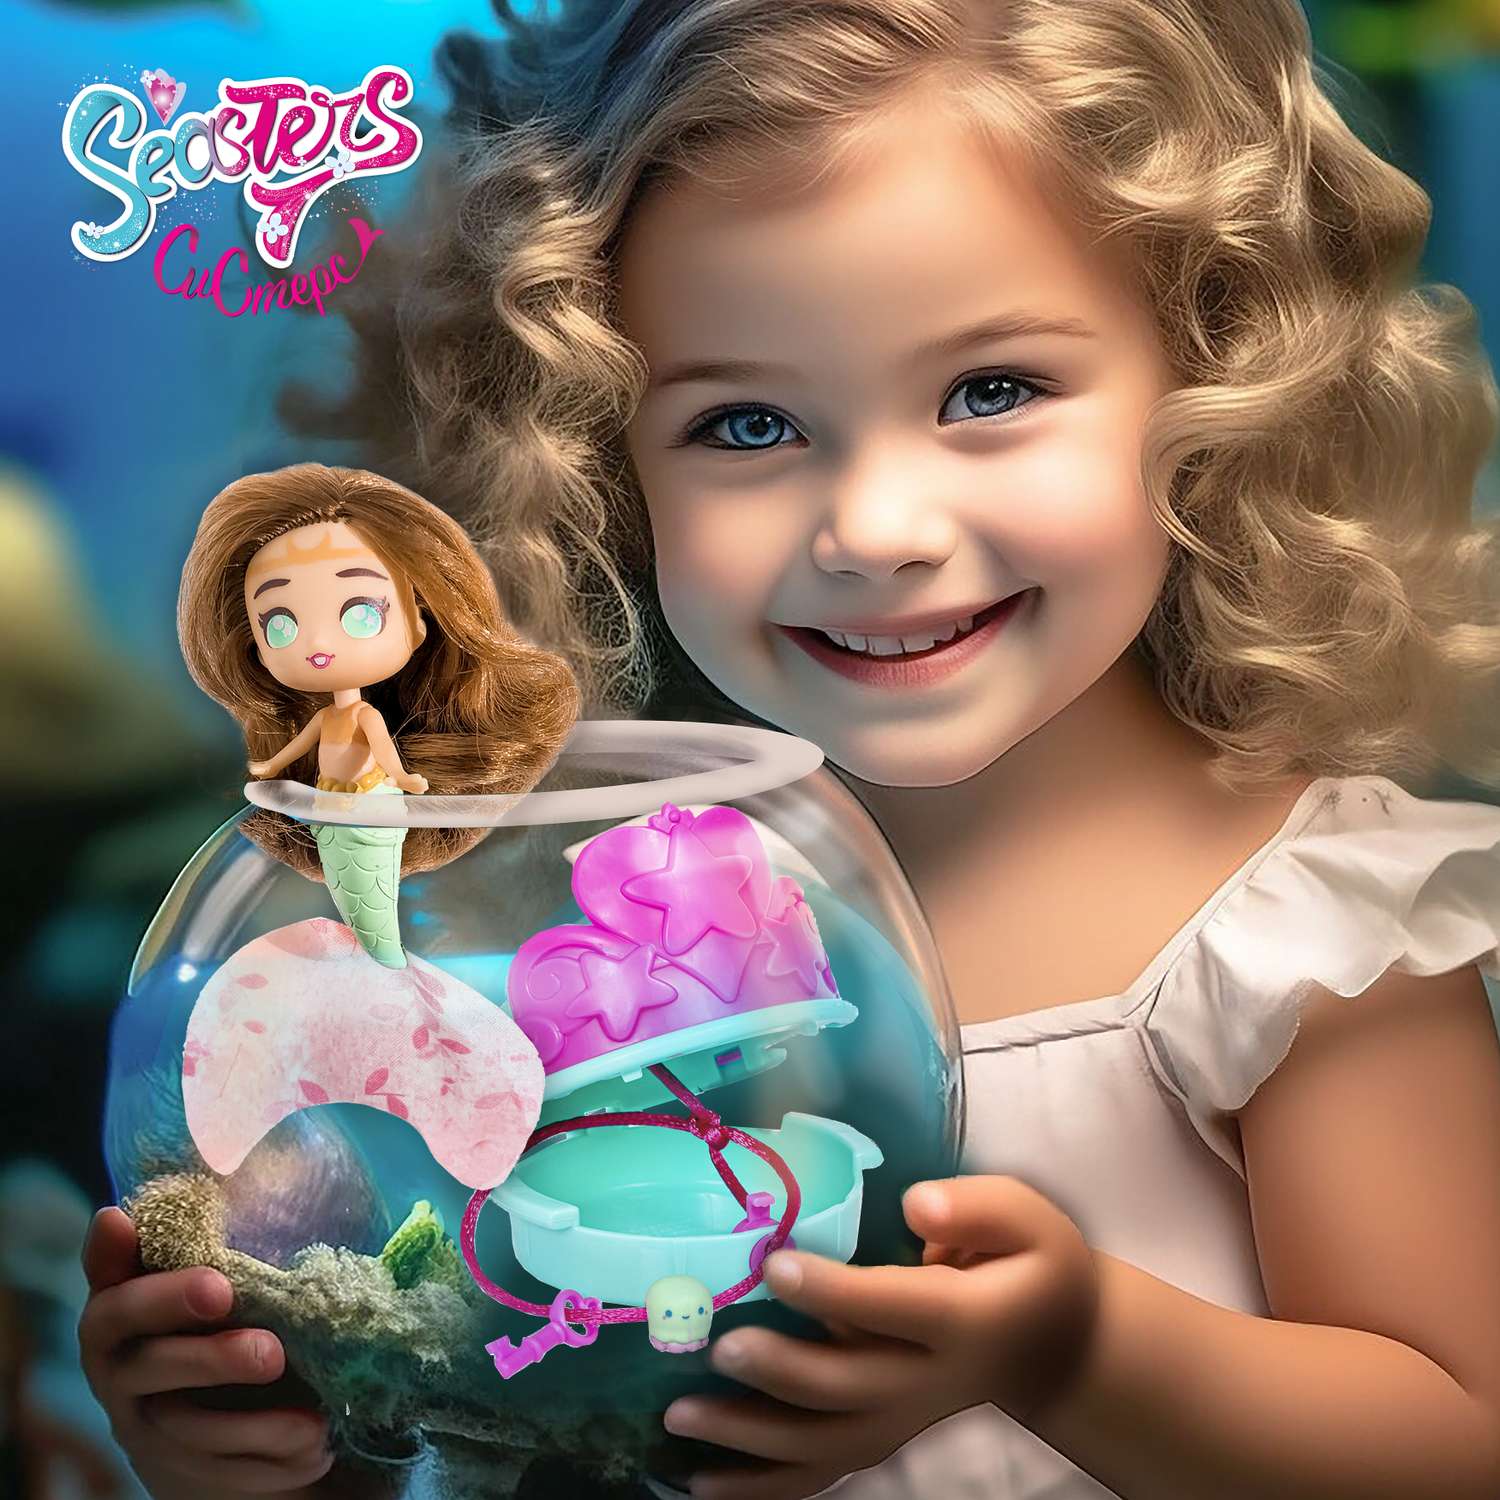 Кукла-сюрприз SEASTERS СиСтерс Принцесса русалка Грейс набор с бассейном аксессуарами и питомцем EAT15800 - фото 1